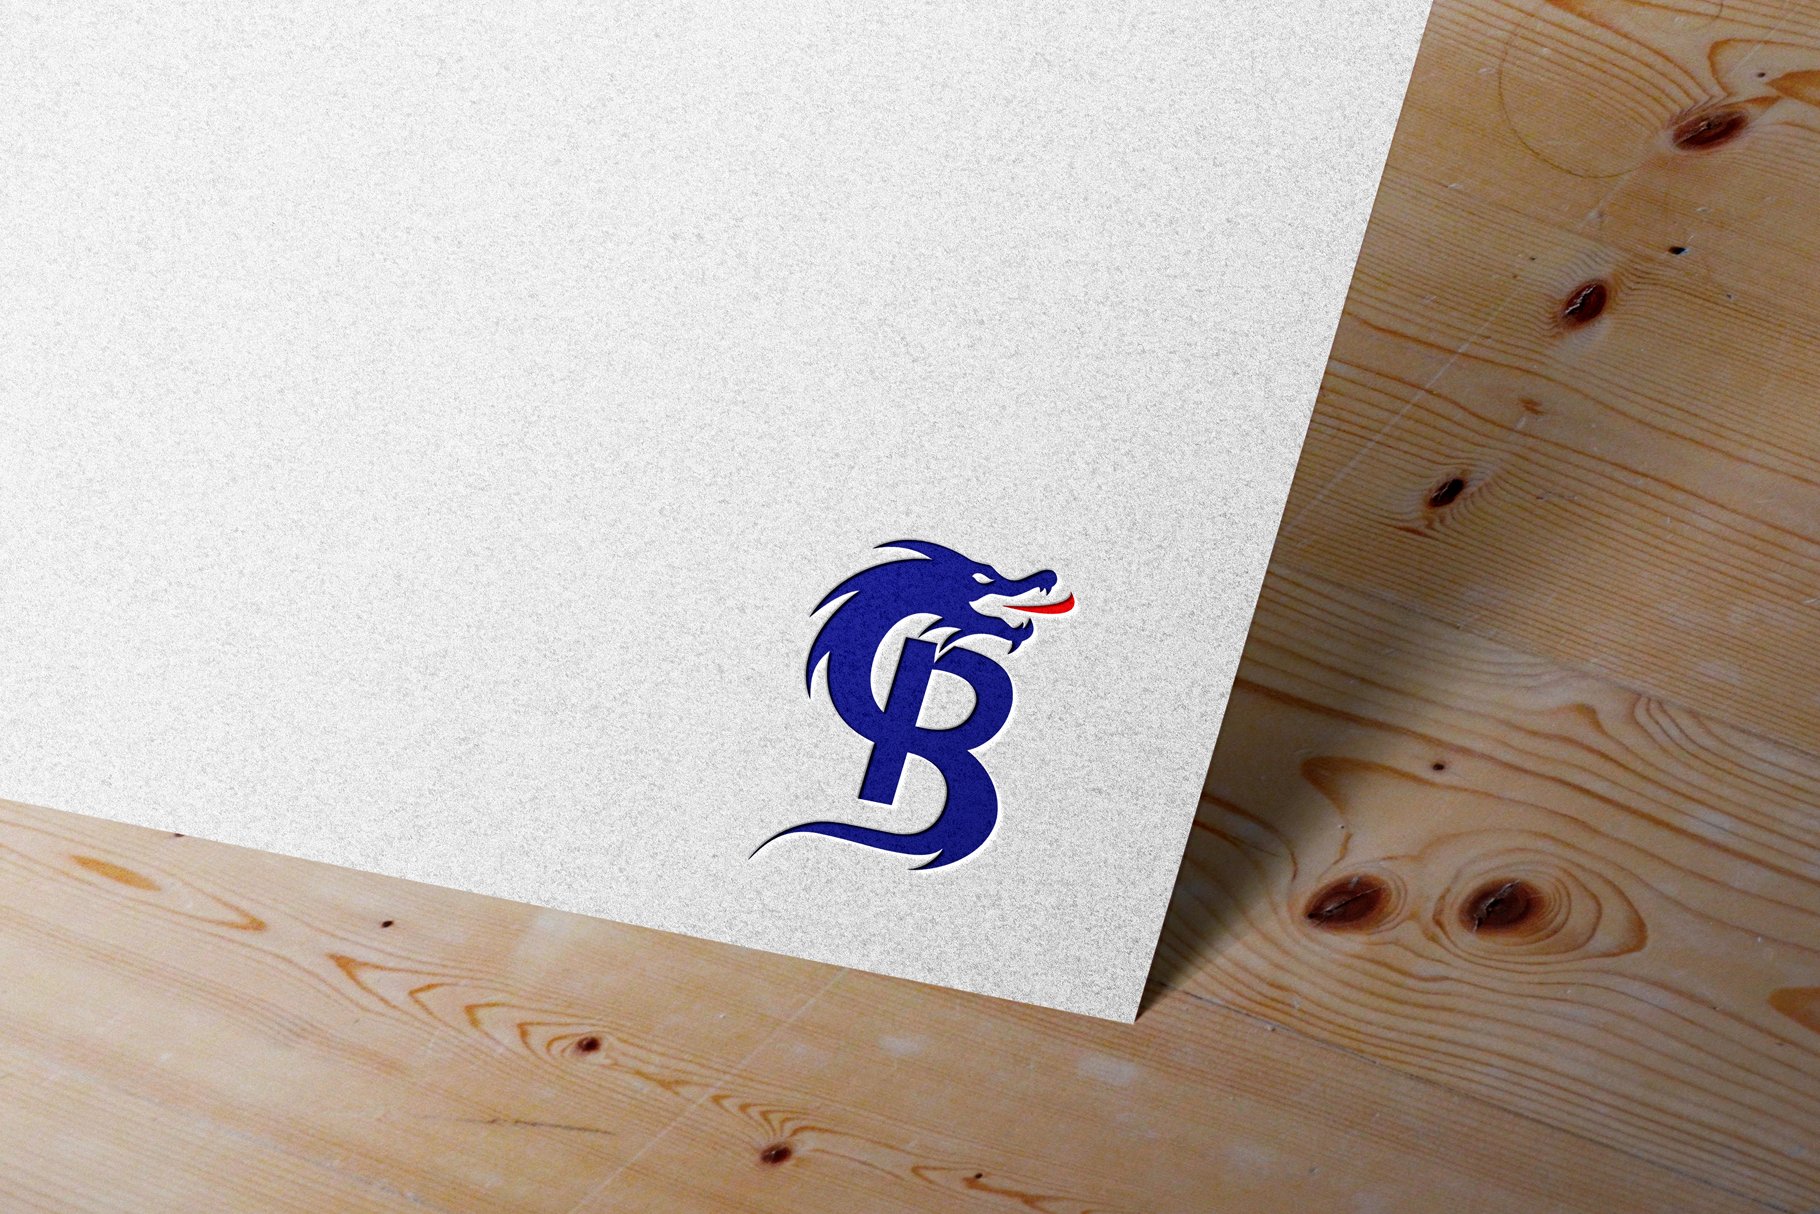 Dragon B Logo preview image.